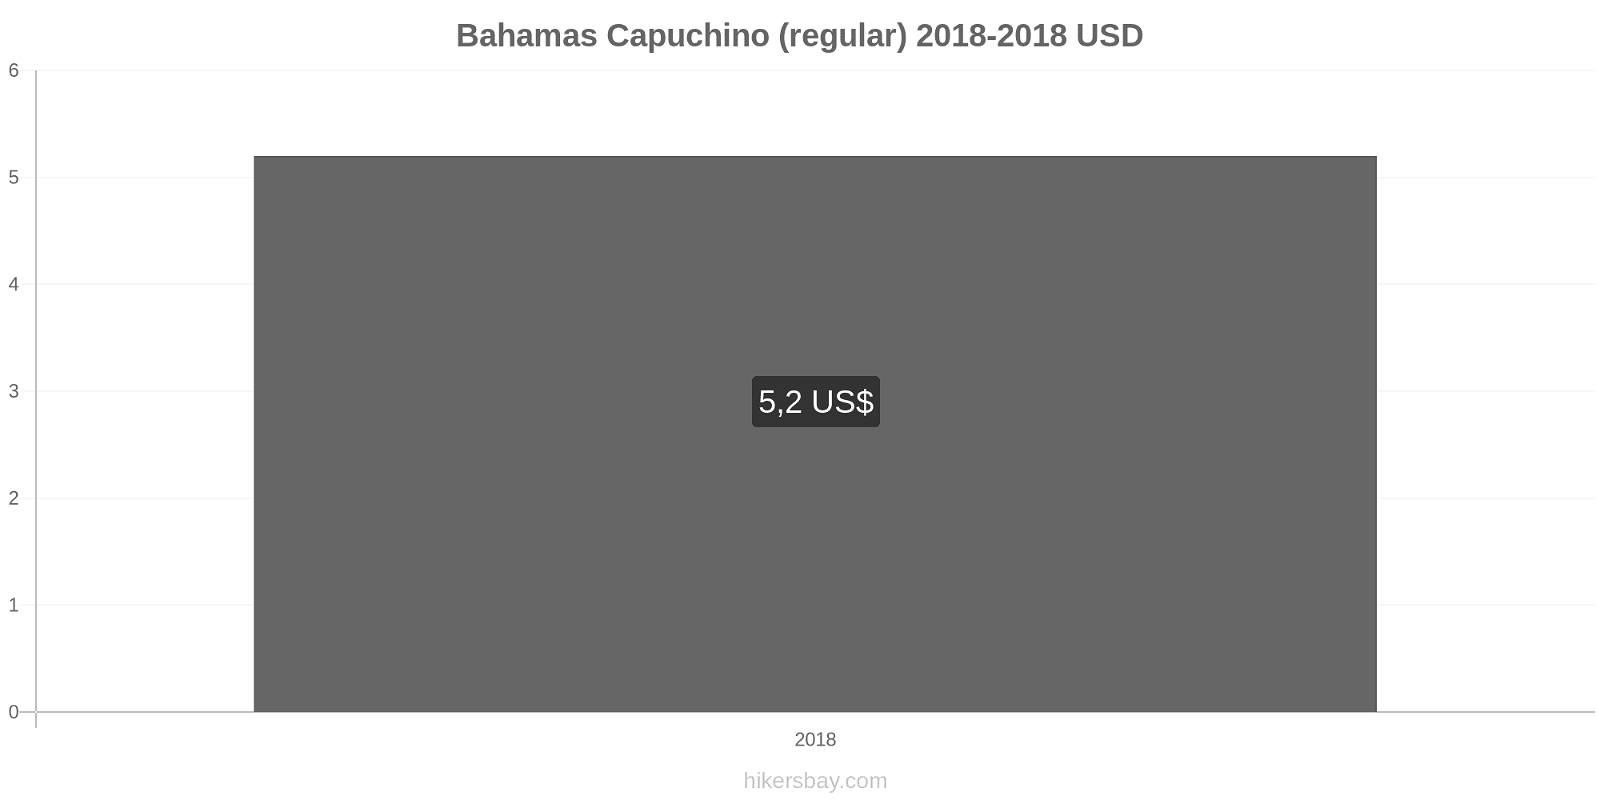 Bahamas cambios de precios Cappuccino hikersbay.com